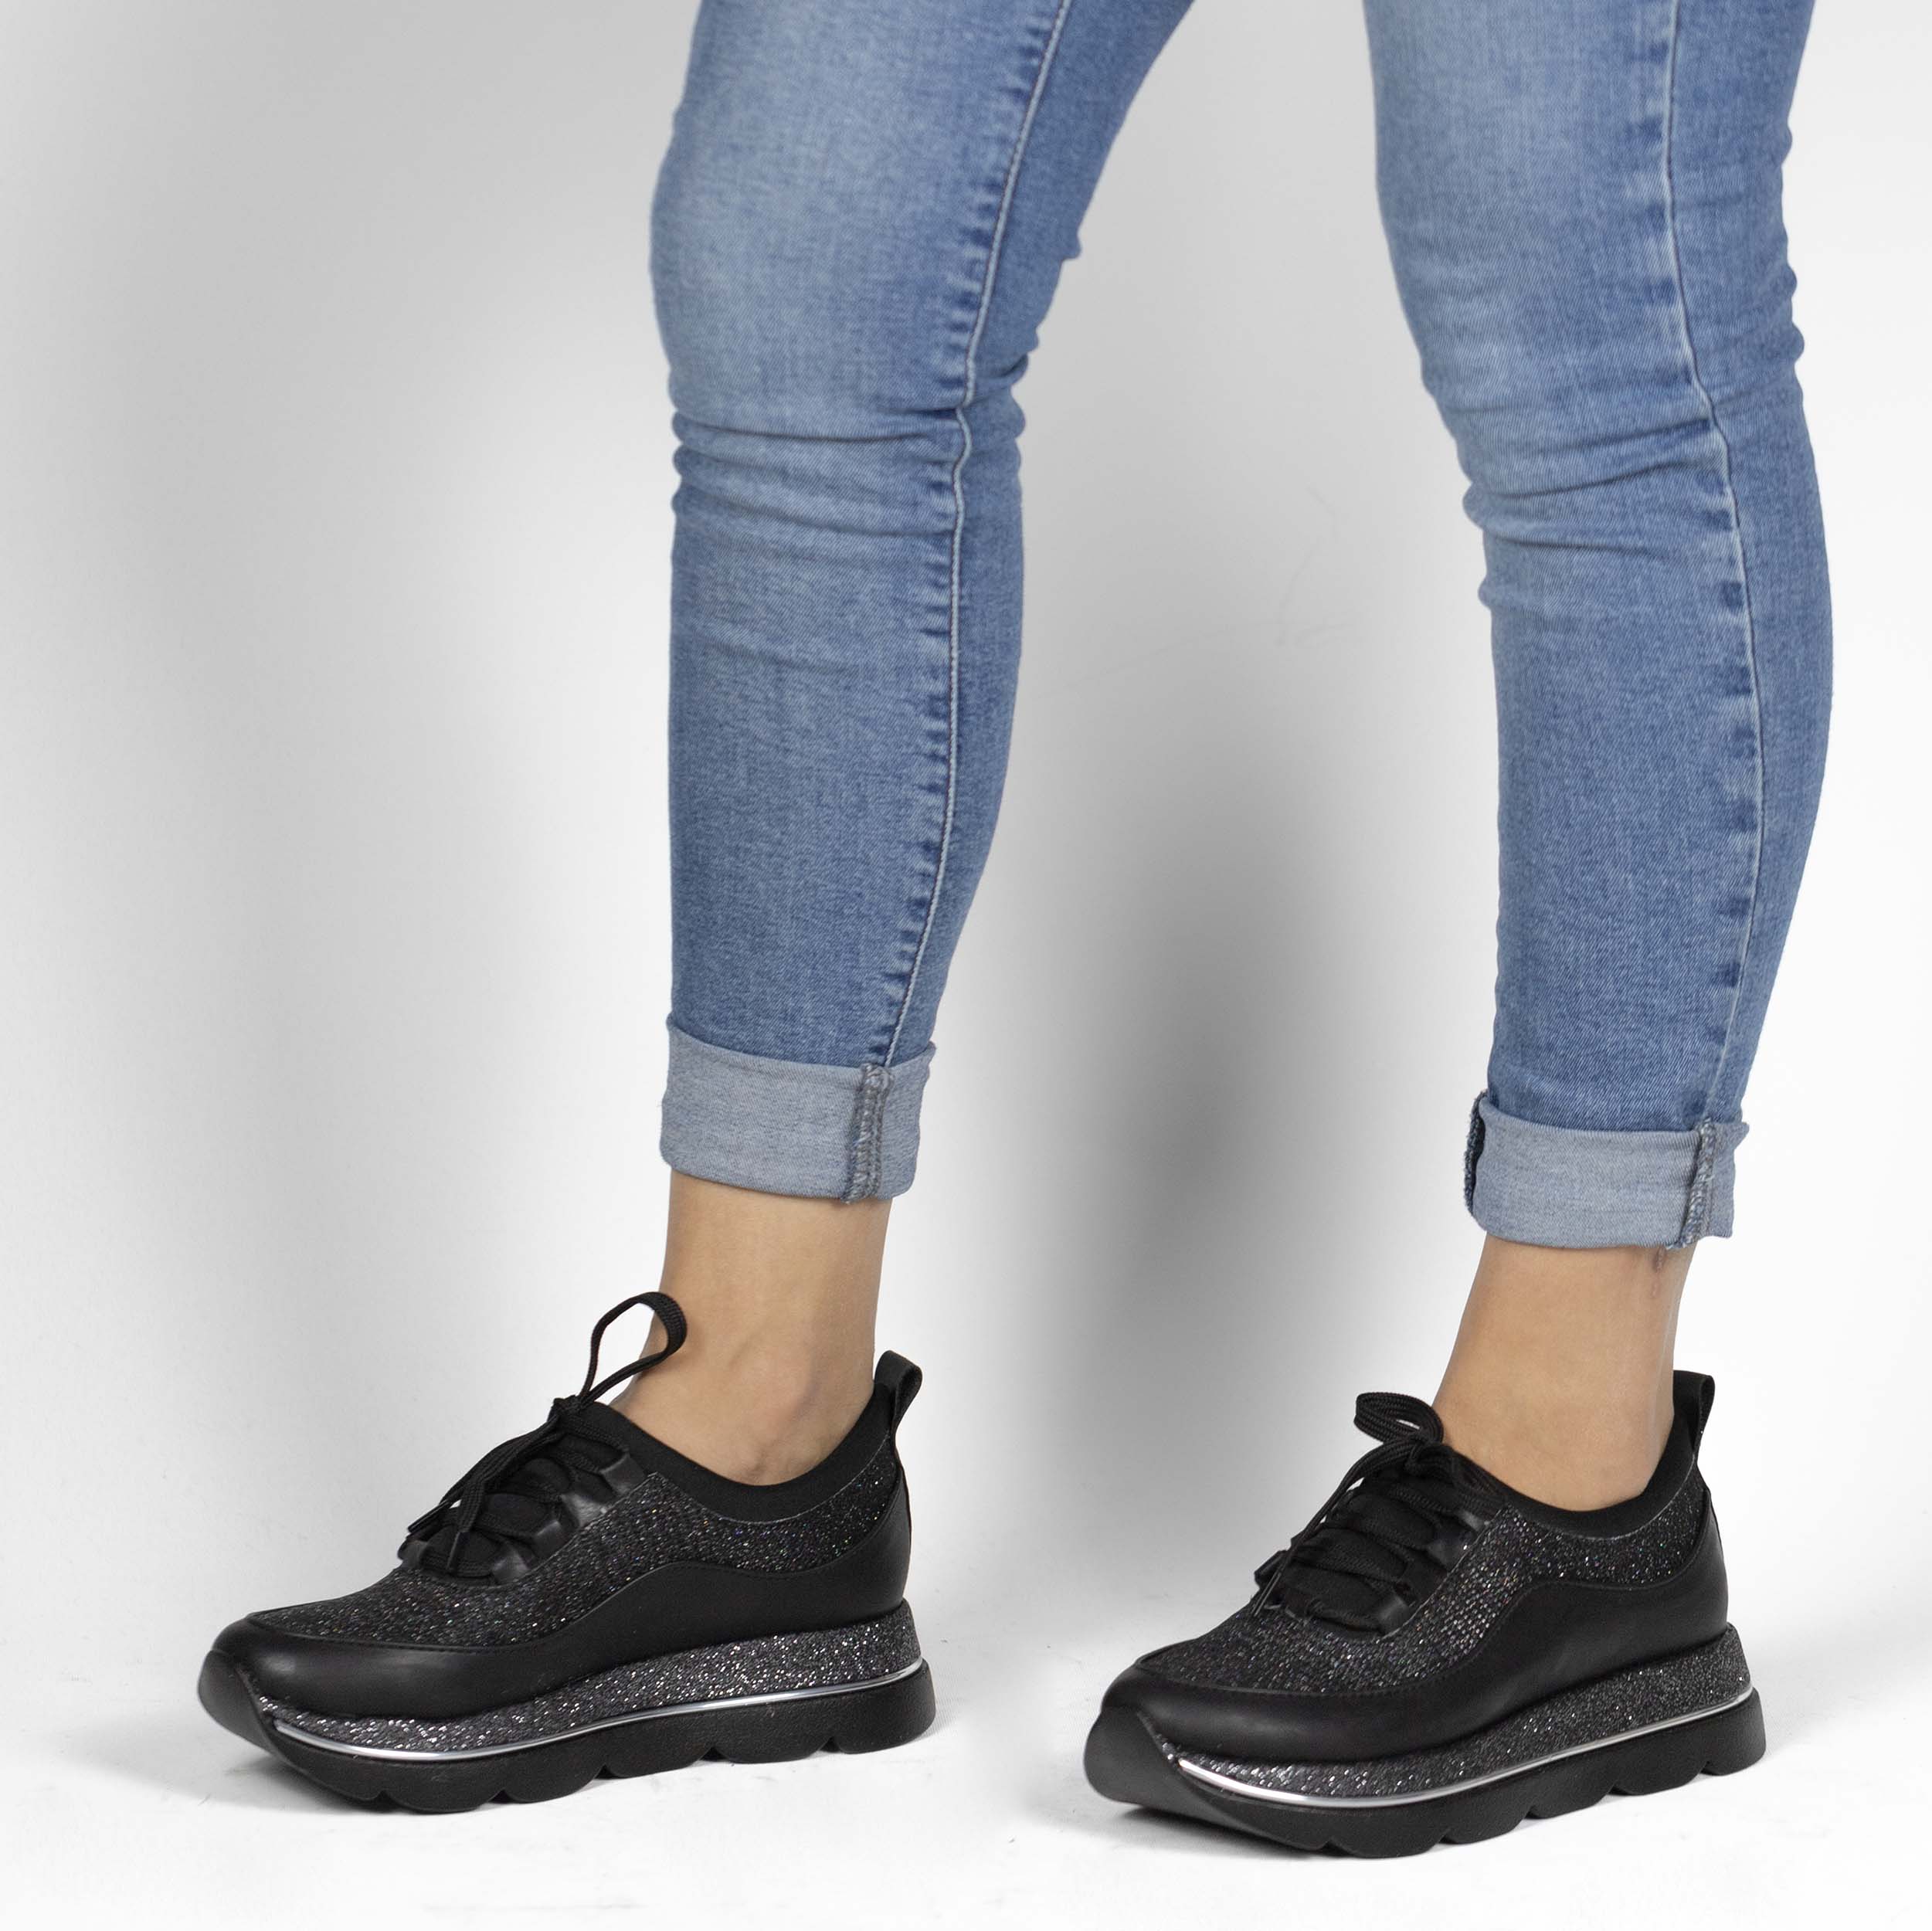 Kadın Günlük Siyah Kalın Yüksek Tabanlı 4 cm Simli Spor Ayakkabı, Renk: Siyah, Beden: 37